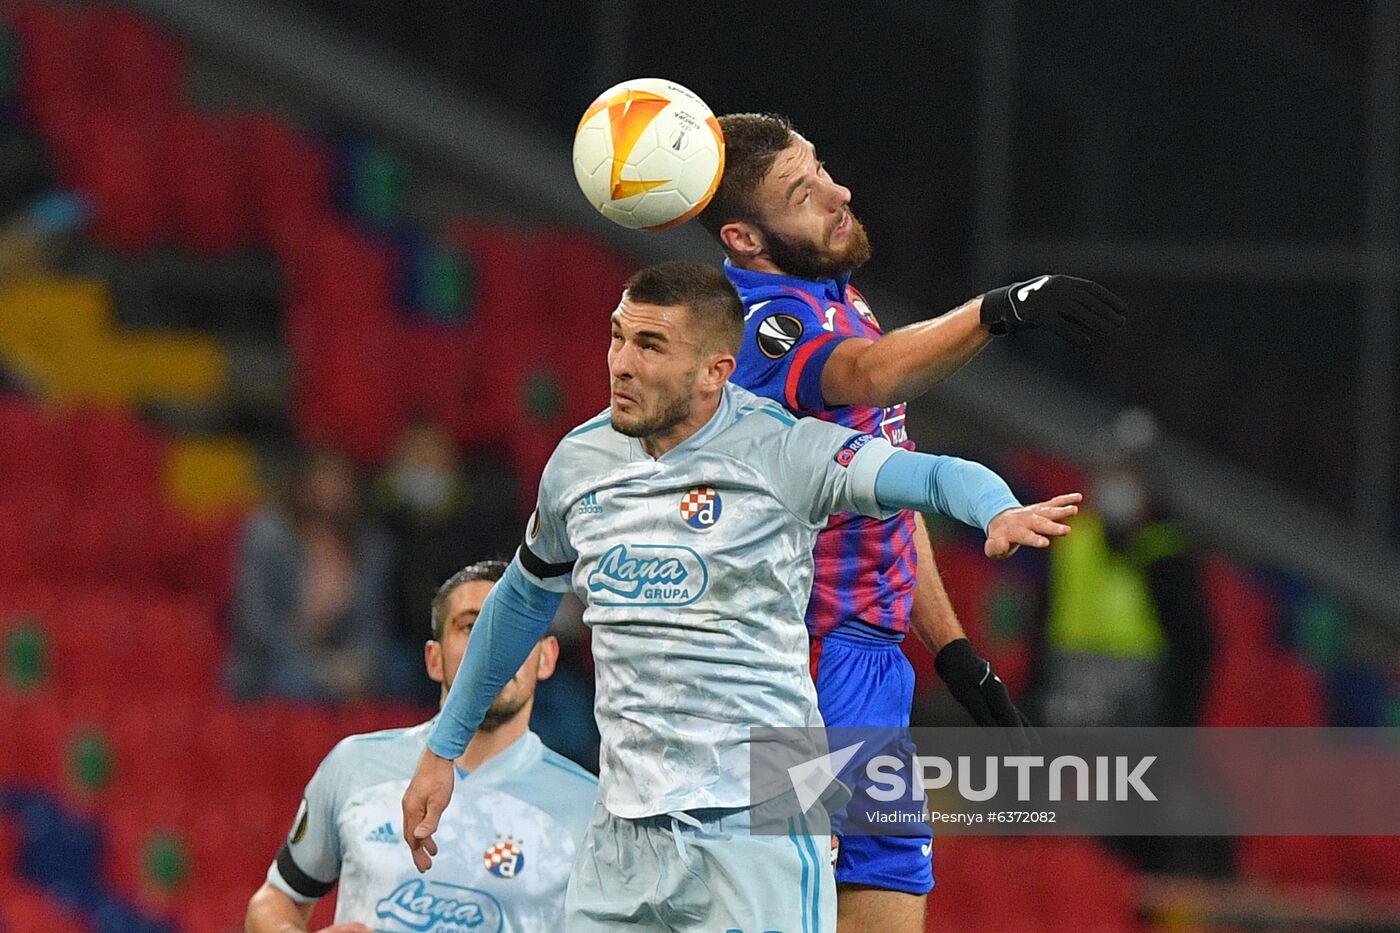 Russia Soccer Europa League CSKA - Dinamo